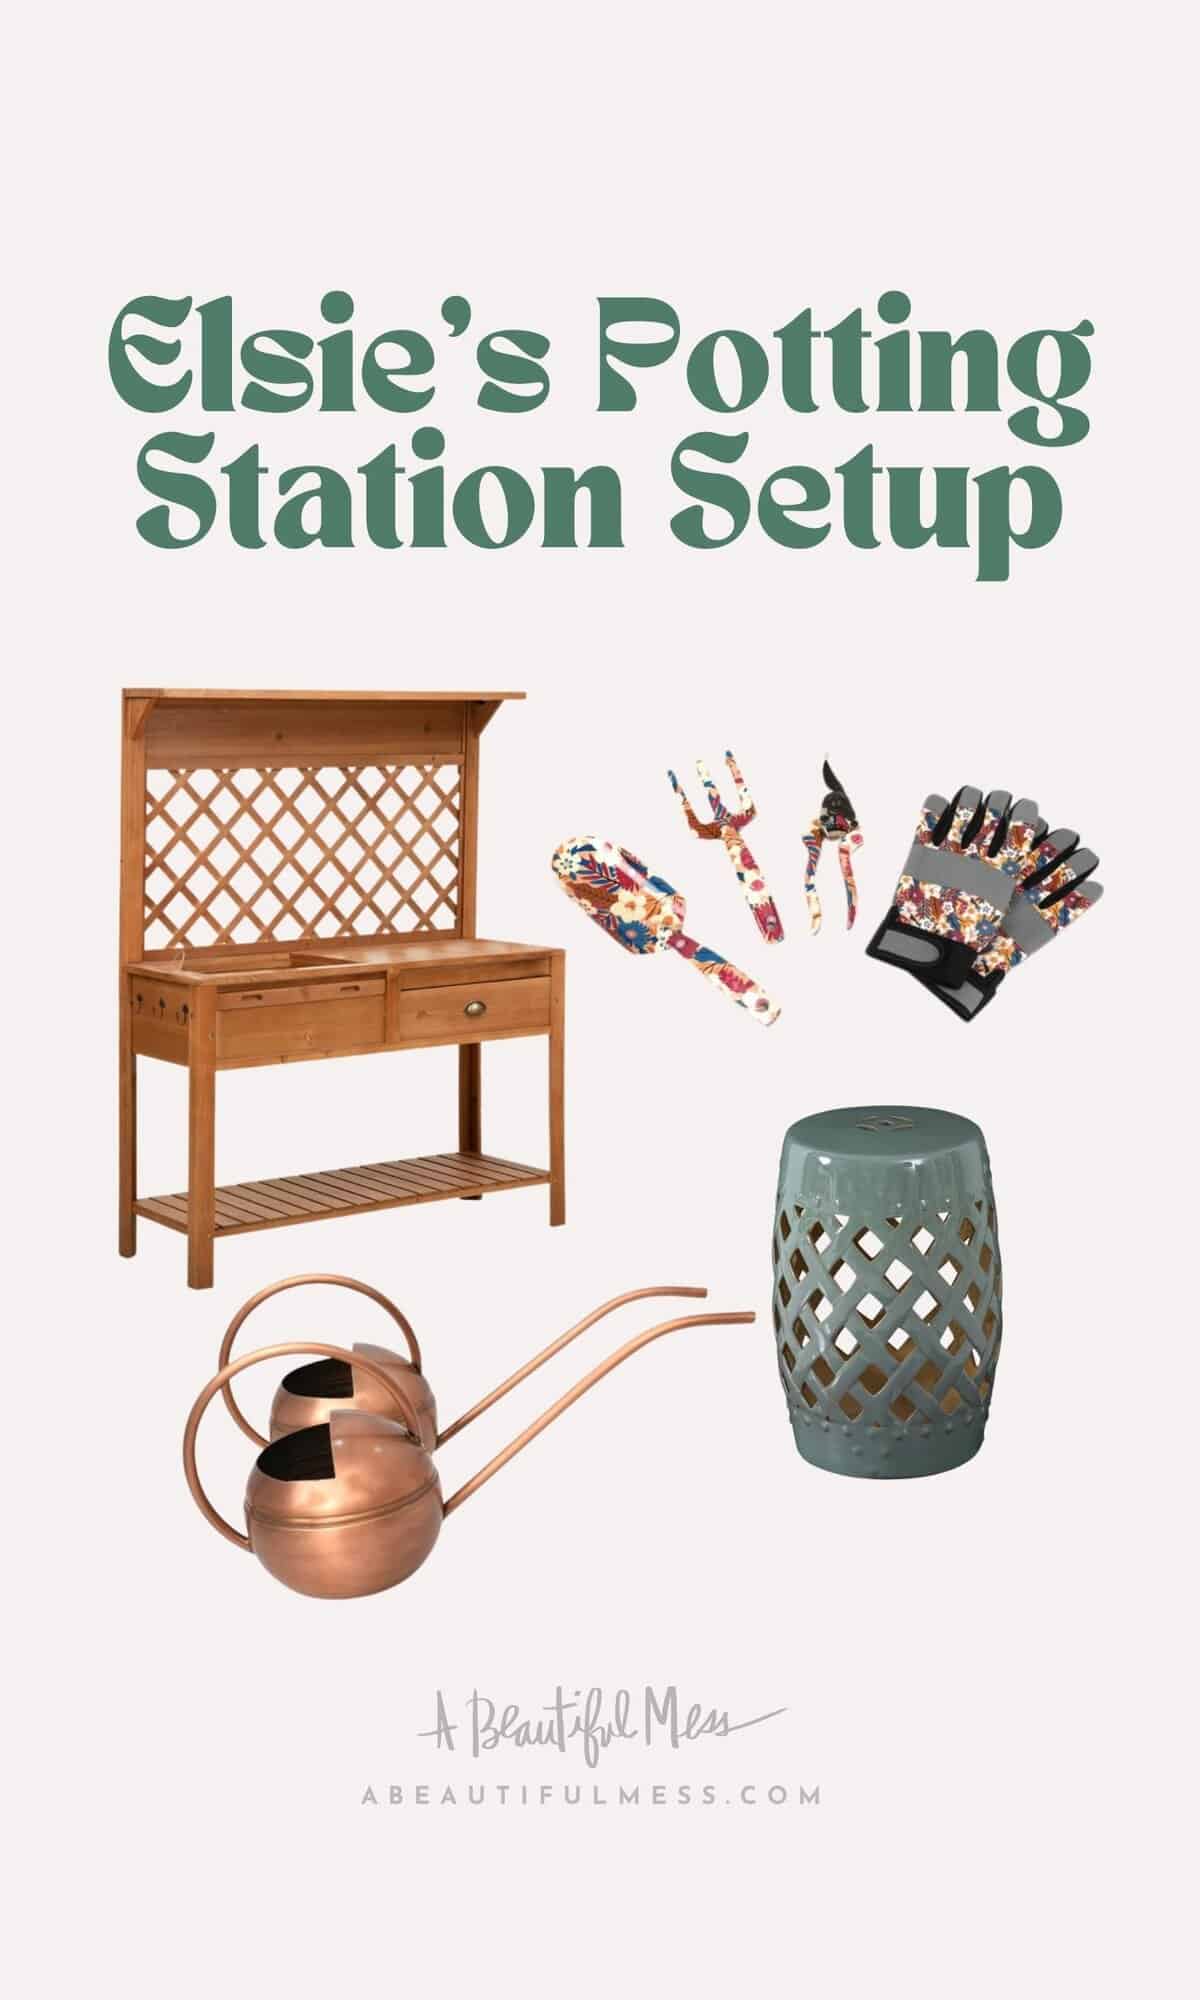 Elsies potting station setup